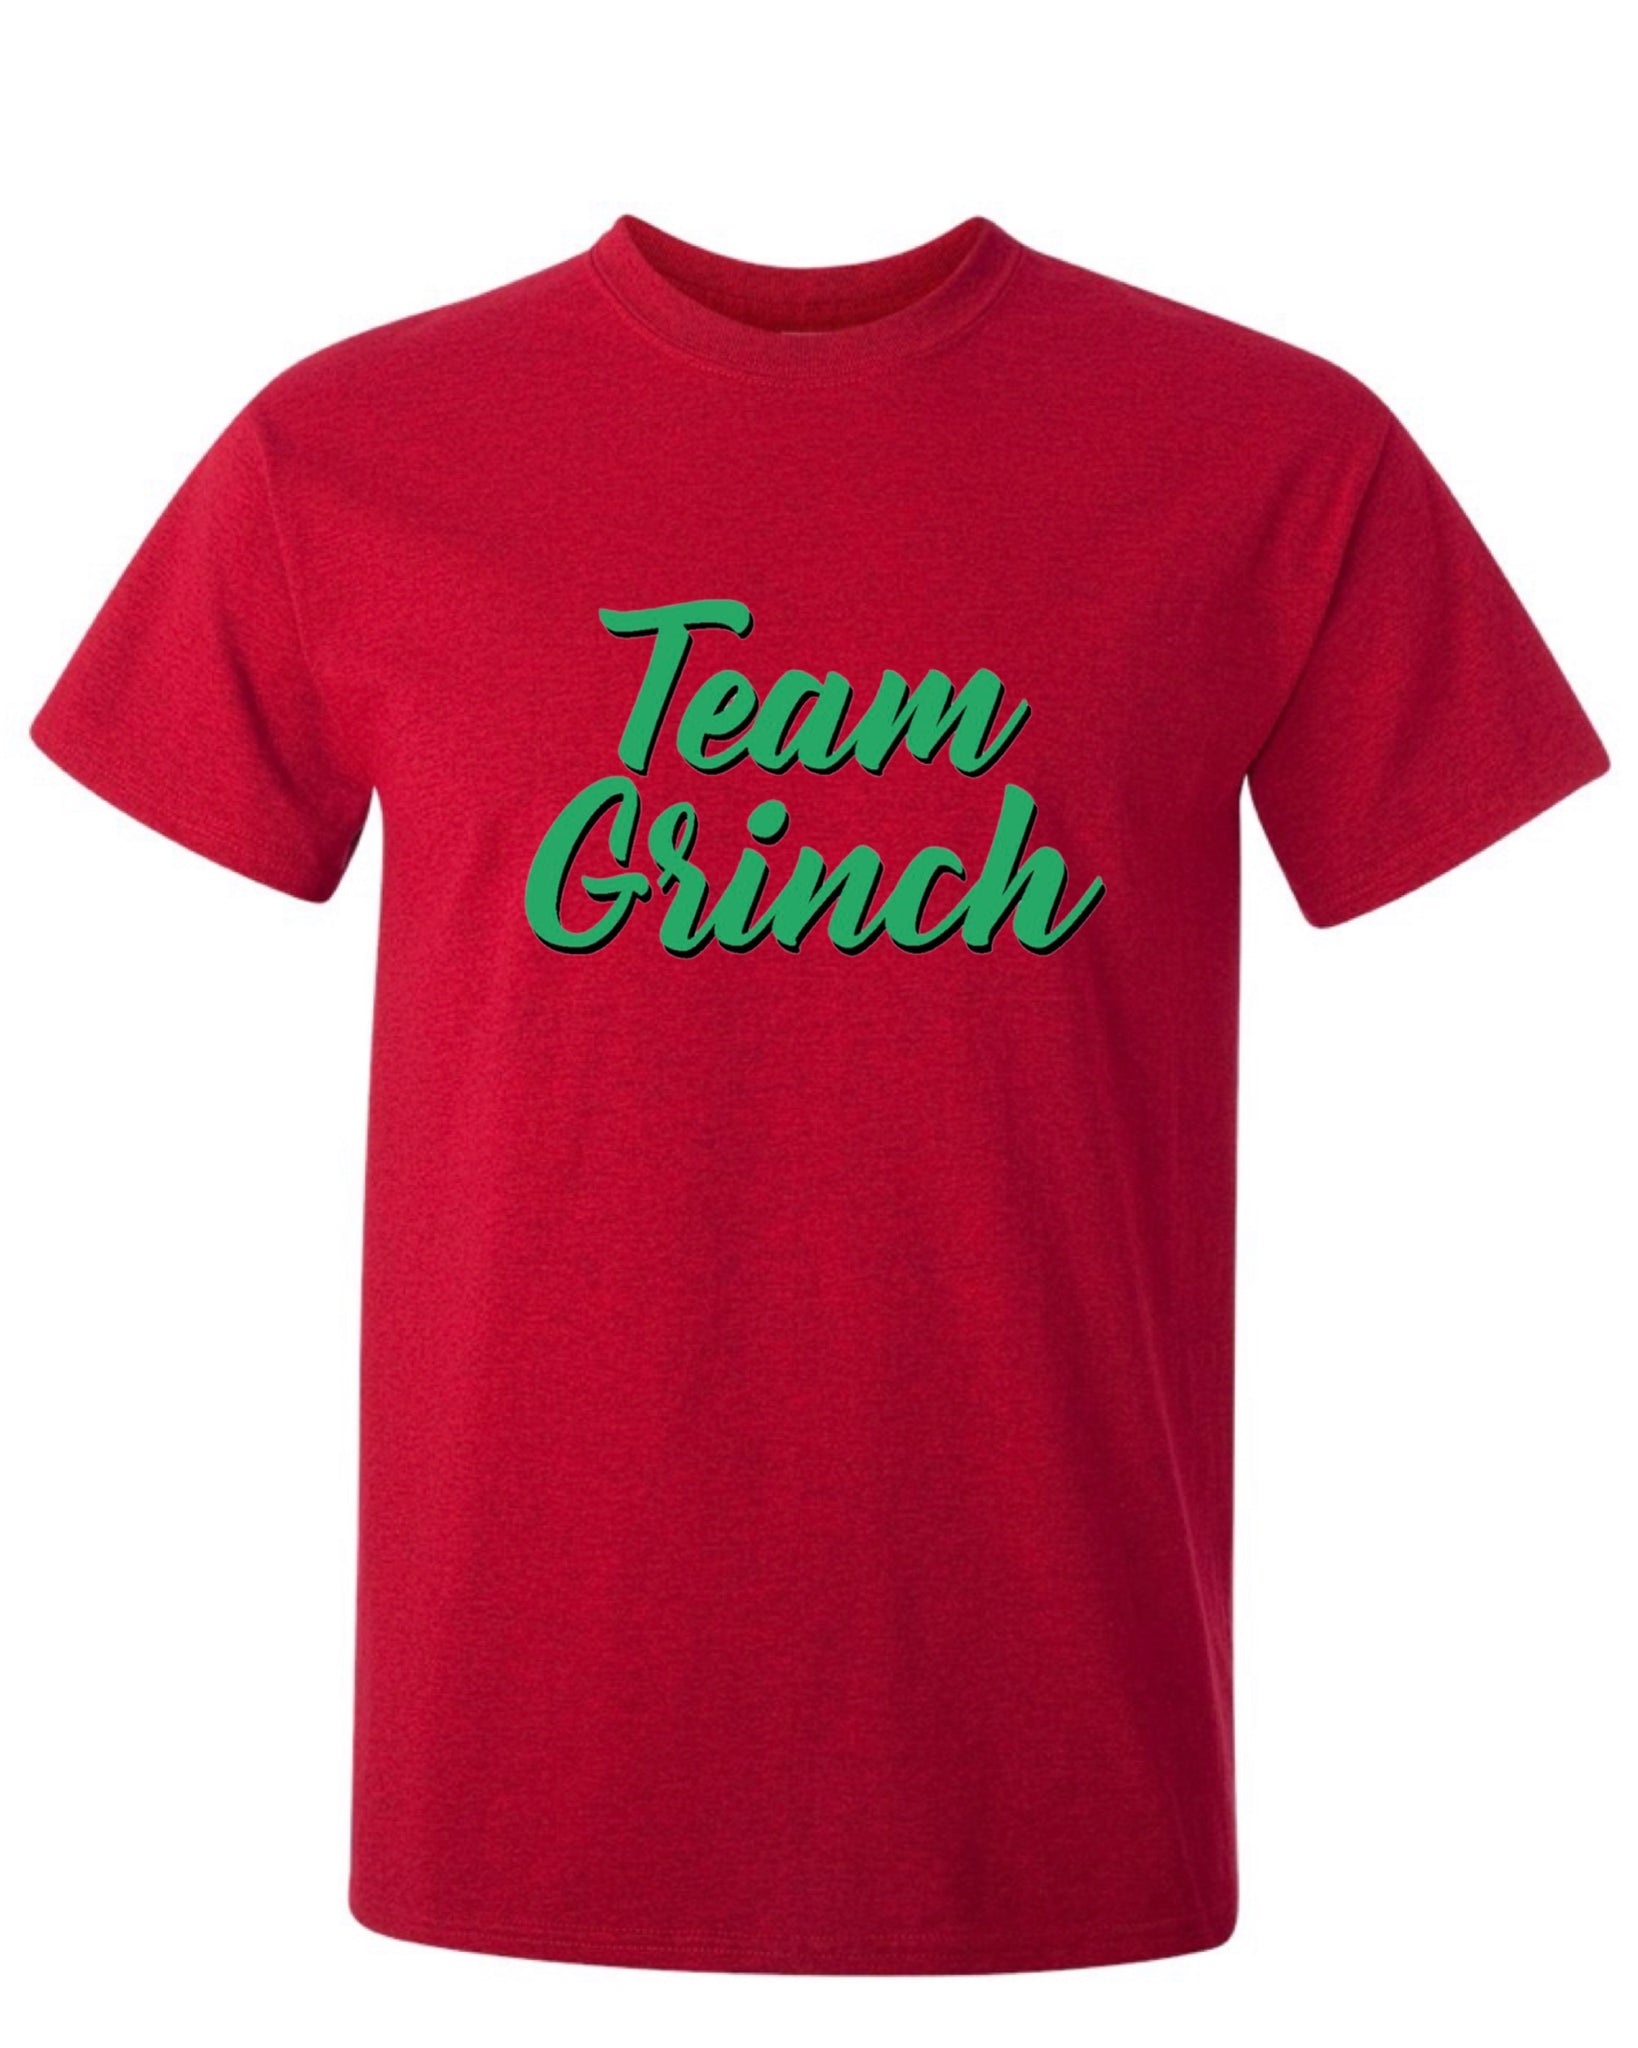 Team Grinch